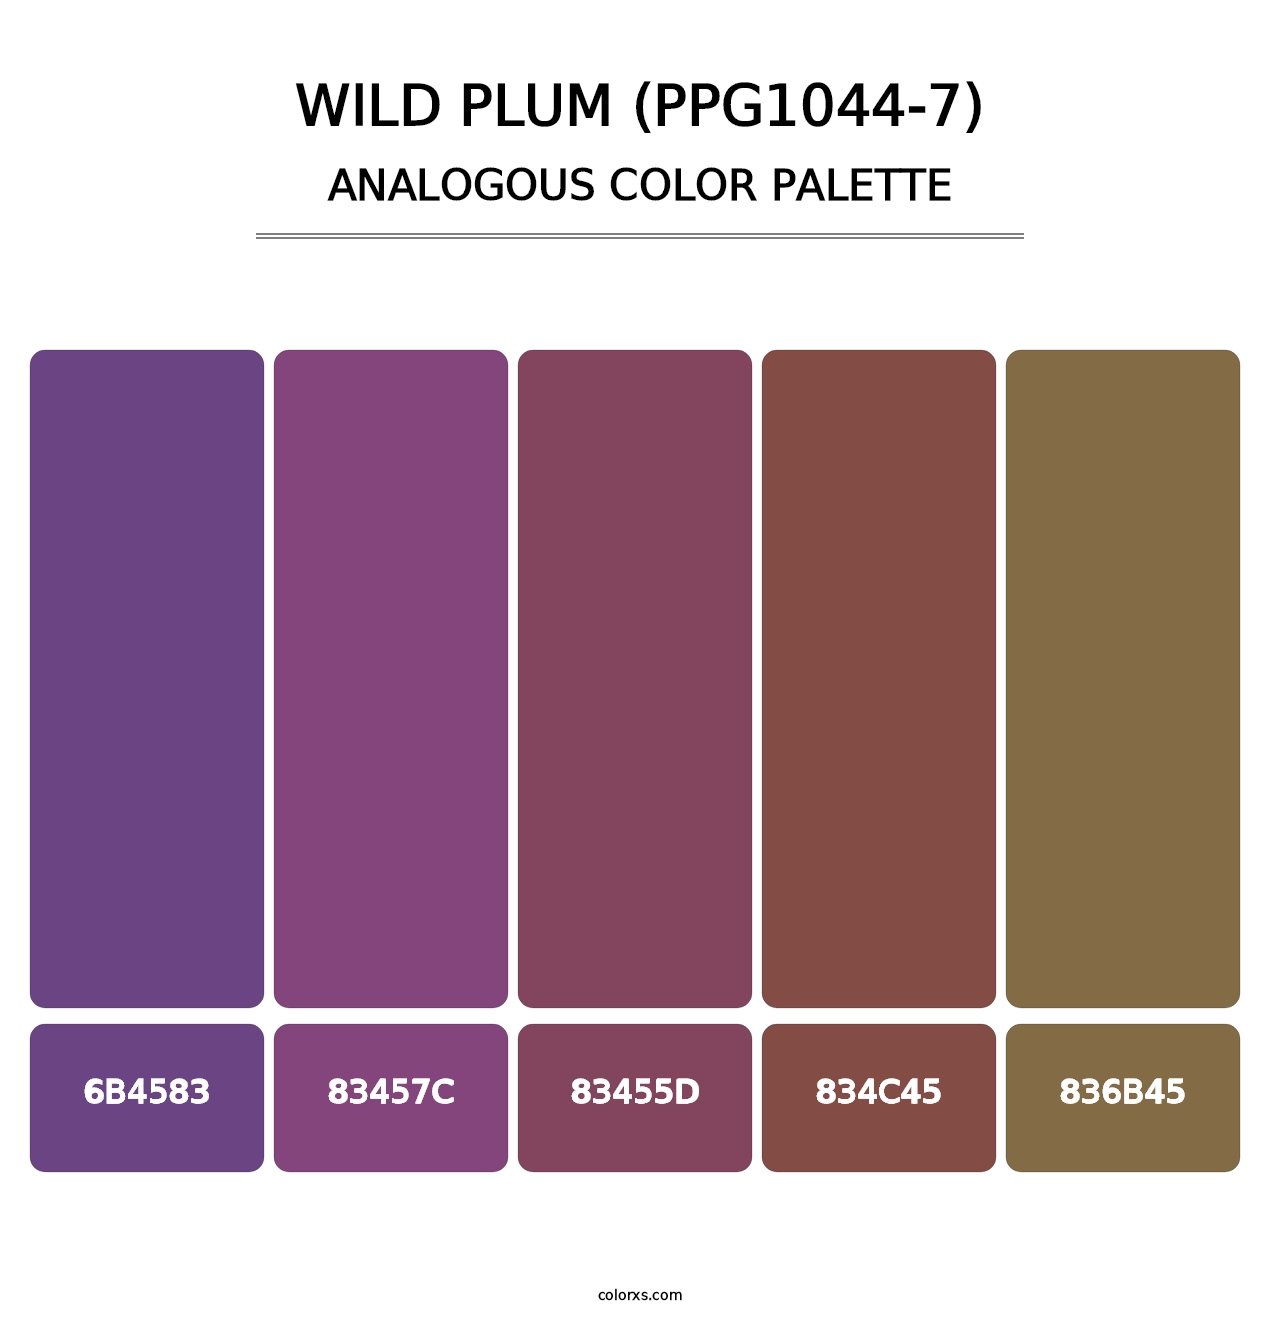 Wild Plum (PPG1044-7) - Analogous Color Palette